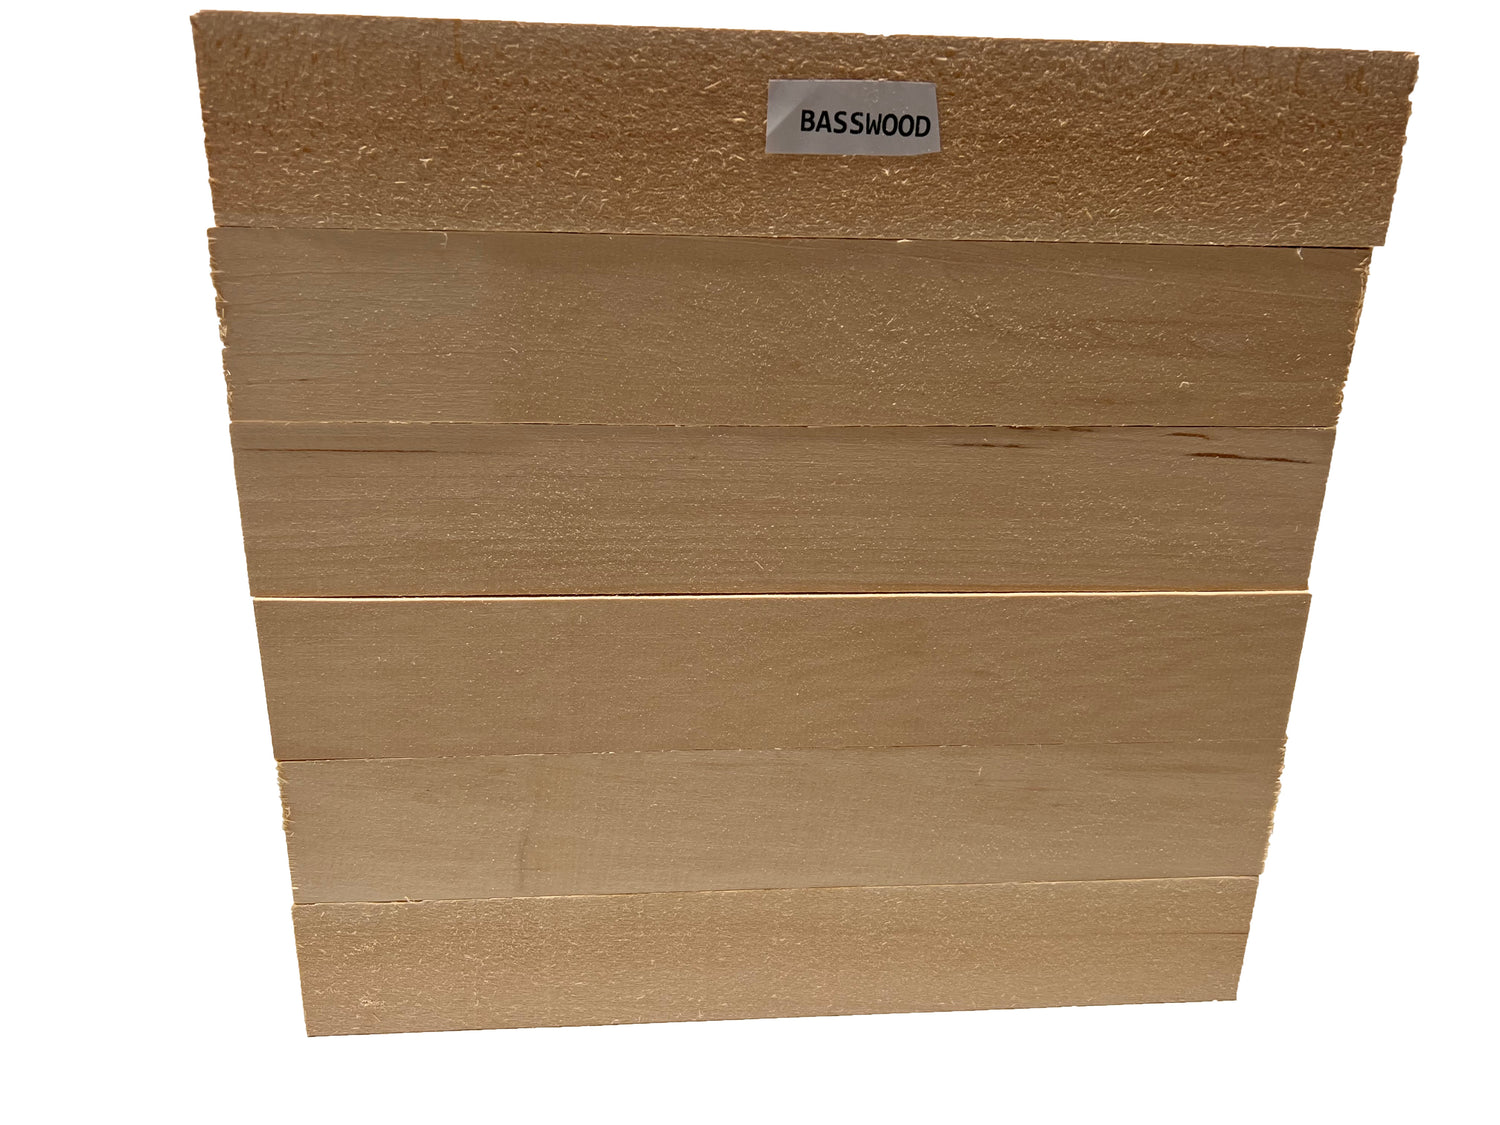 Paquete combinado de madera de tilo, torneado de madera adecuada, variedad  de tamaños y paquetes combinados para elegir (1, 2-1/2 x 2-1/2 x 6)